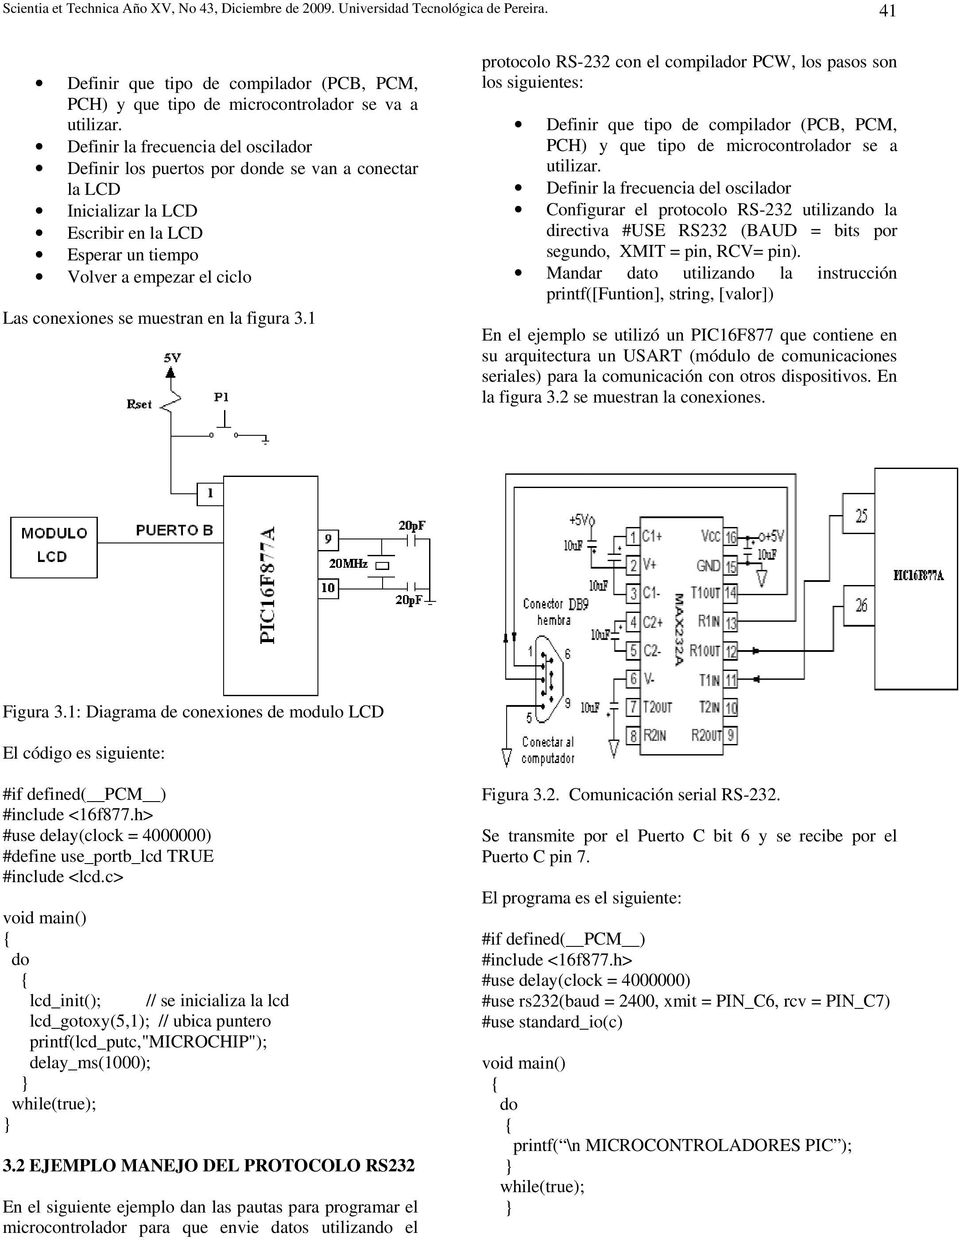 en la figura 3.1 protocolo RS-232 con el compilador PCW, los pasos son los siguientes: Definir que tipo de compilador (PCB, PCM, PCH) y que tipo de microcontrolador se a utilizar.